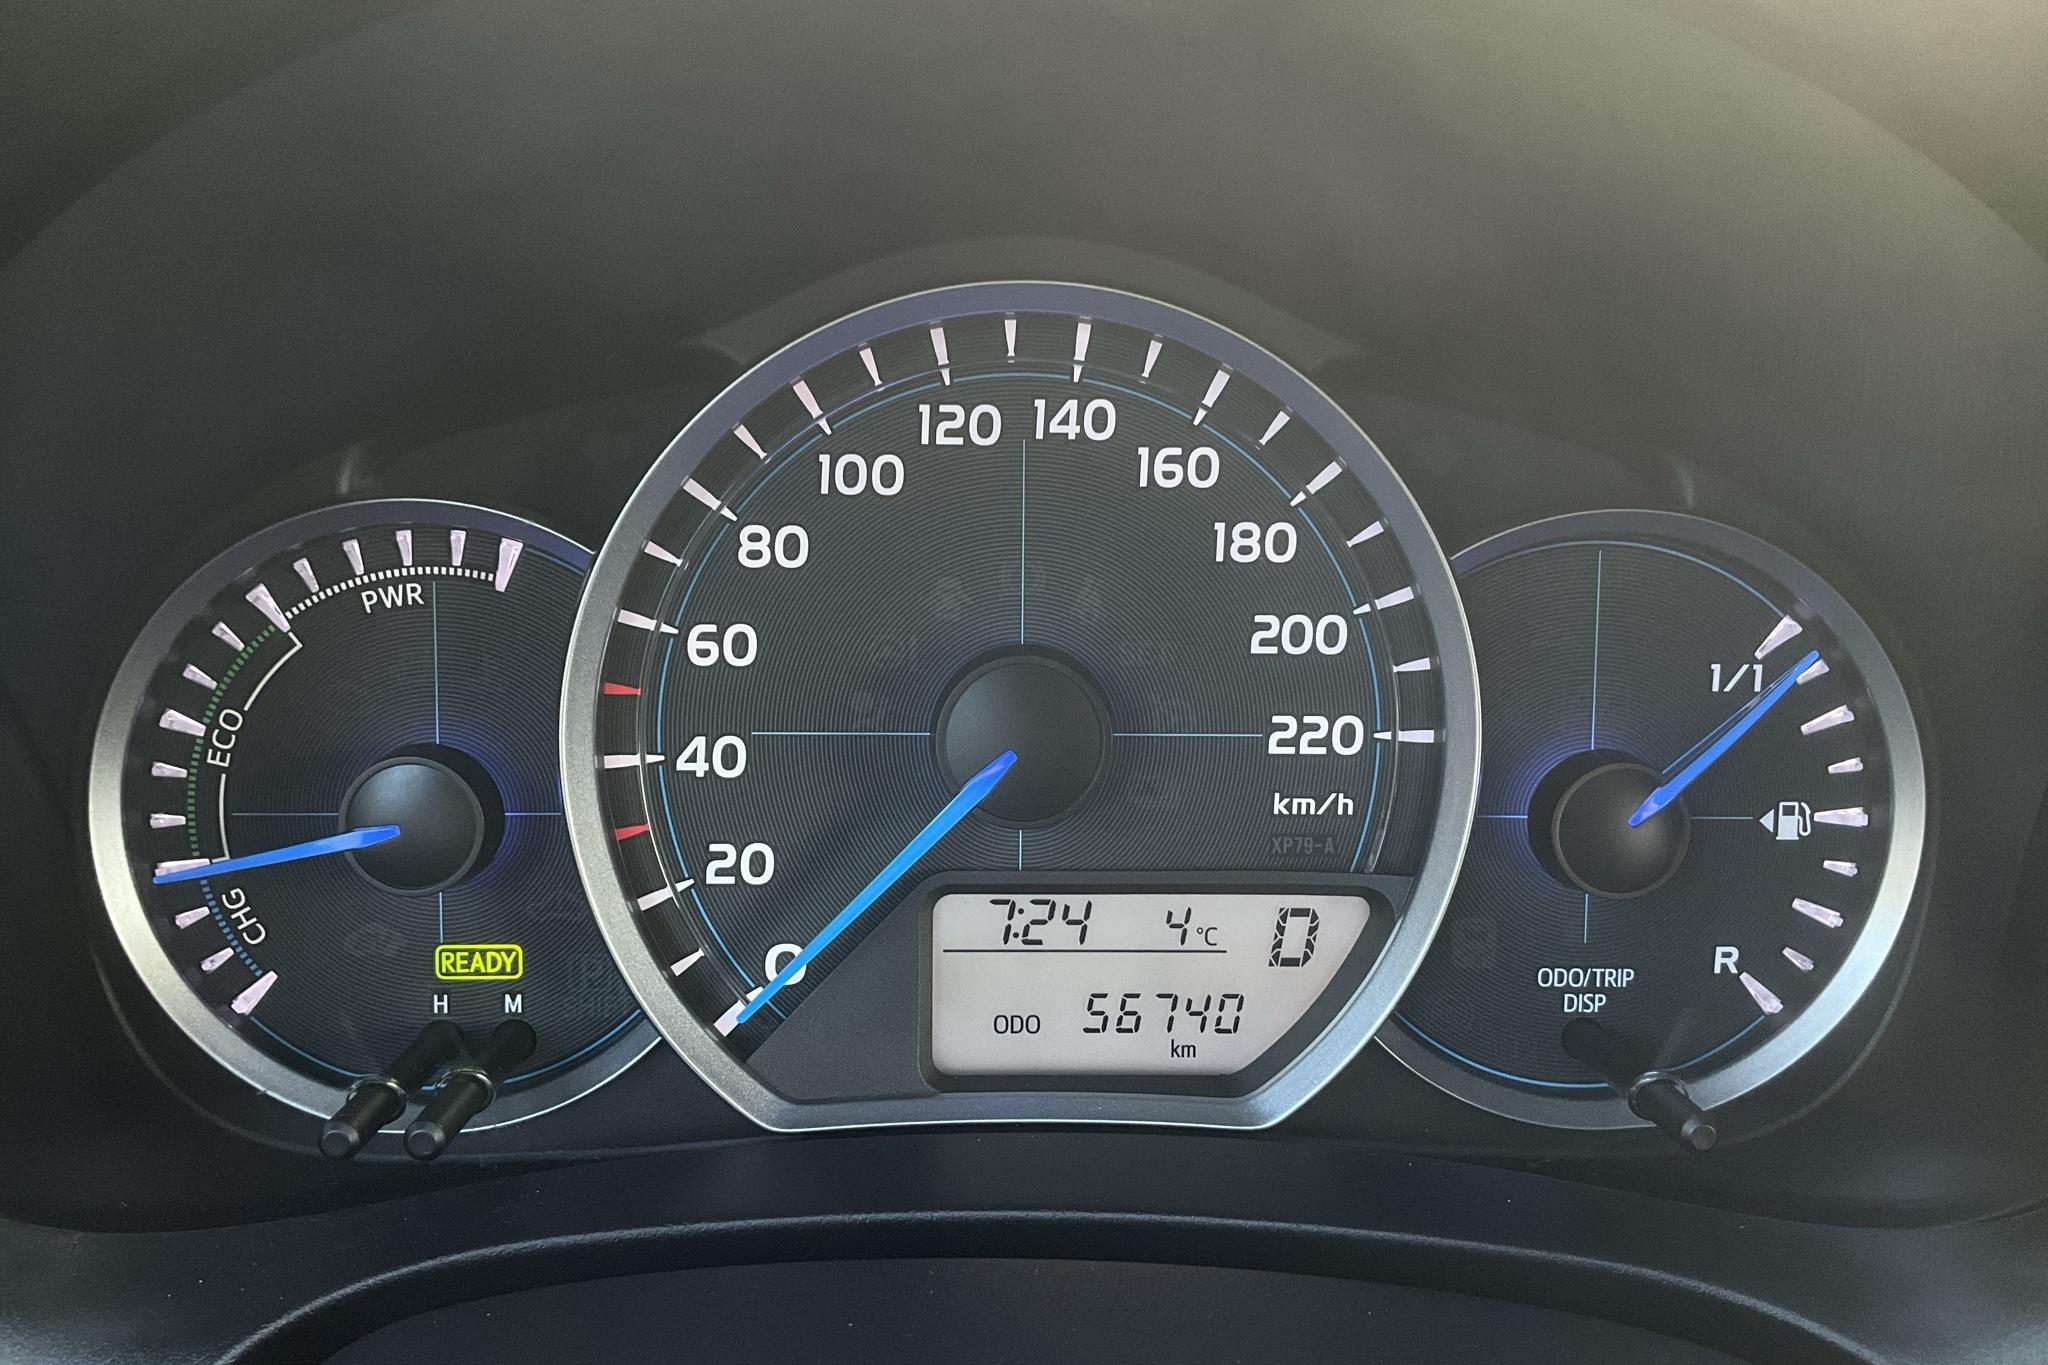 Toyota Yaris 1.5 HSD 5dr (75hk) - 56 740 km - Automatic - white - 2014